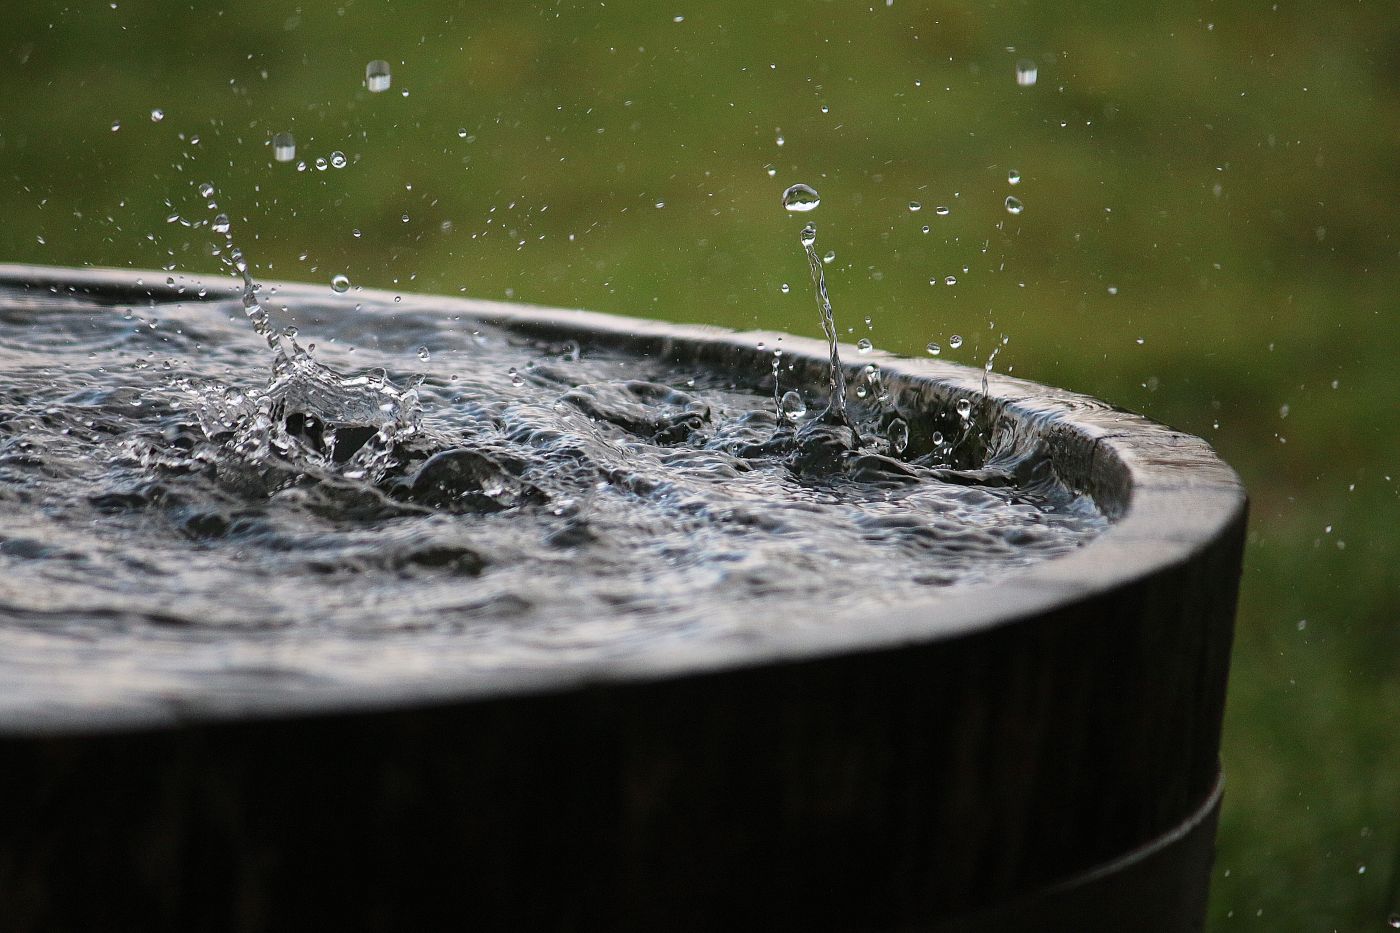 KARPACZ ŁAPIE DESZCZÓWKĘ - ogłoszenie o naborze wniosków na zadania służące ochronie zasobów wodnych